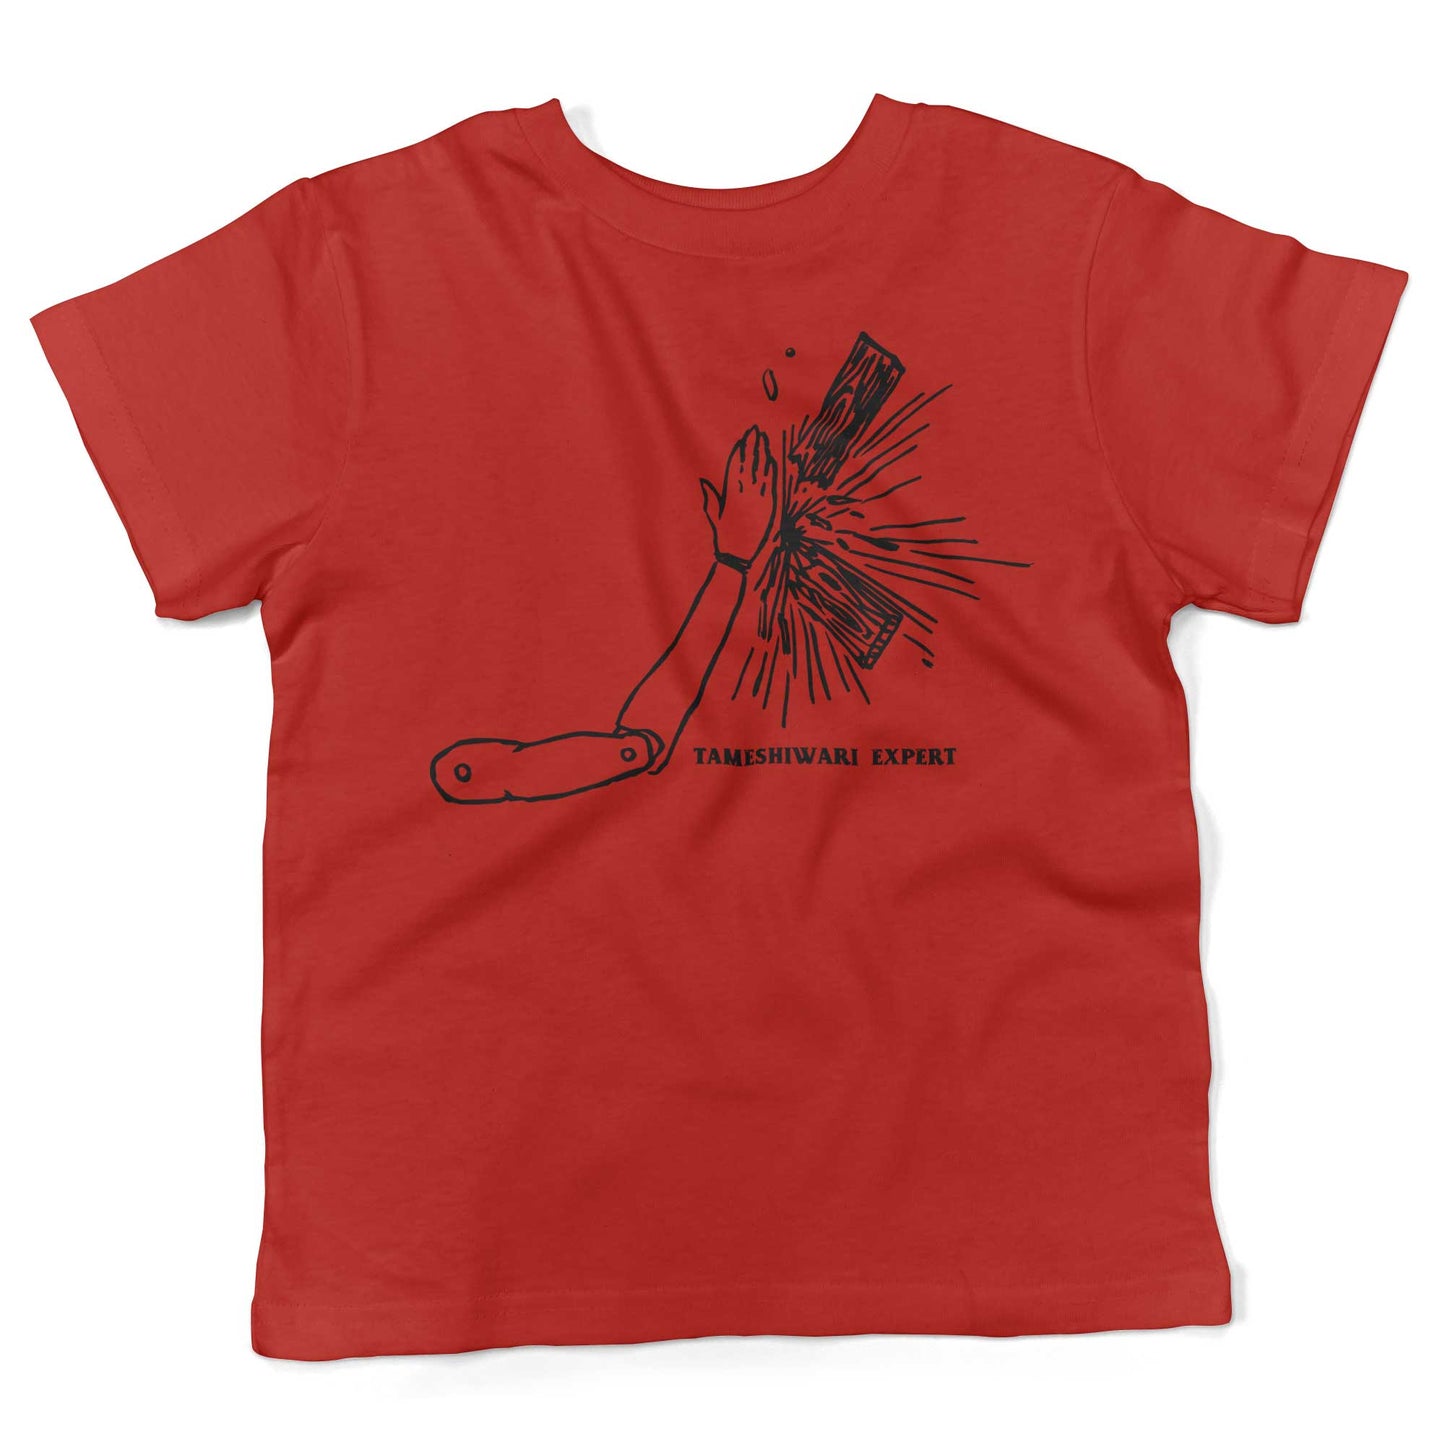 Tameshiwari Expert Toddler Shirt-Red-2T